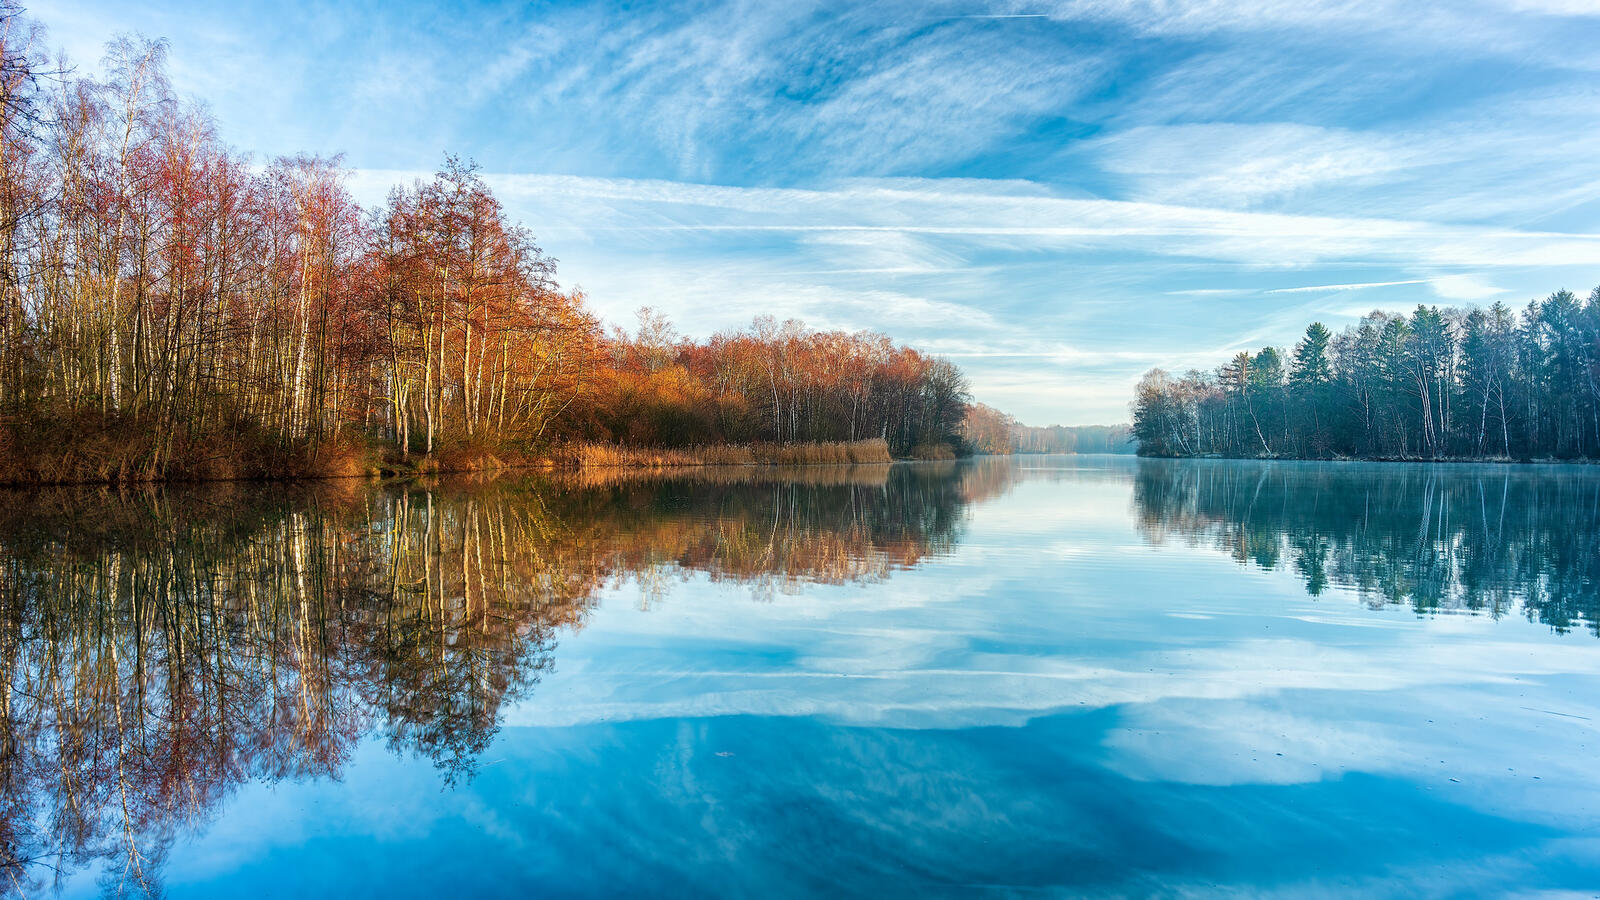 Бесплатное фото Фото бесплатно озеро, осень и без регистрации